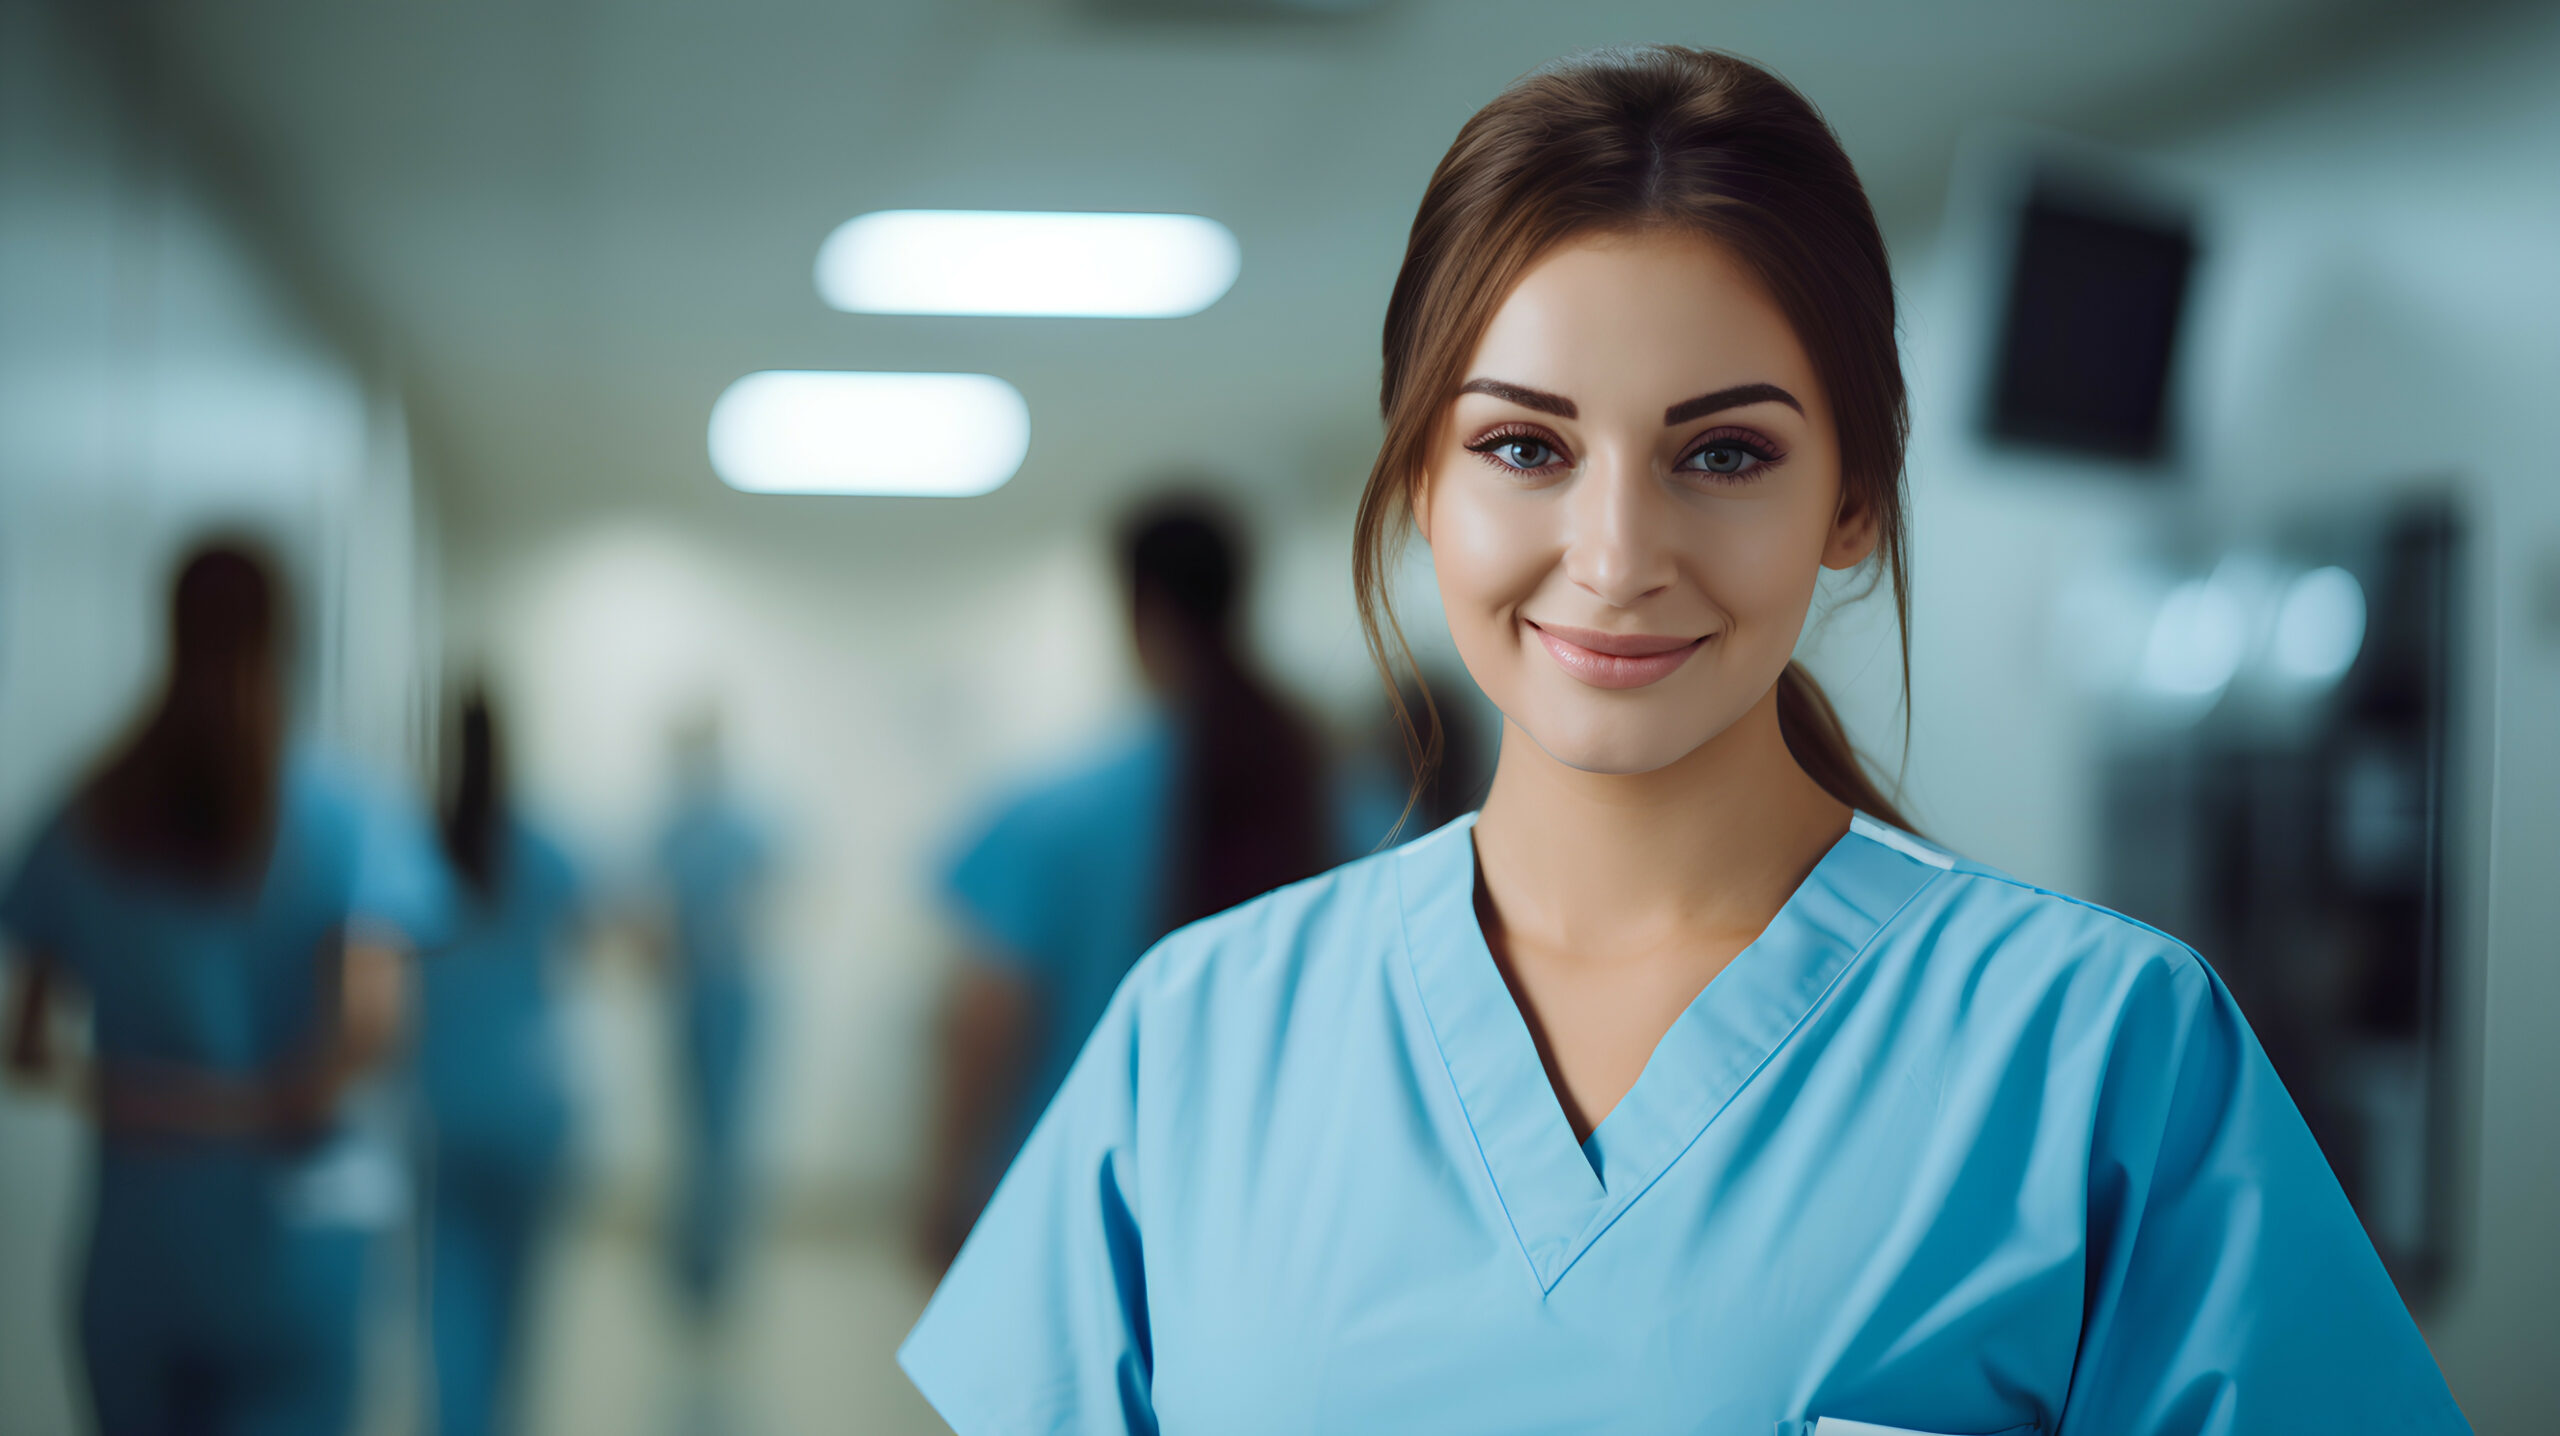 Portré egy kék ápoló ruhában lévő lányról, háttérben homályosan egy kórház folyosója látszódik orvosokkal, ápolókkal és segédápolókkal.